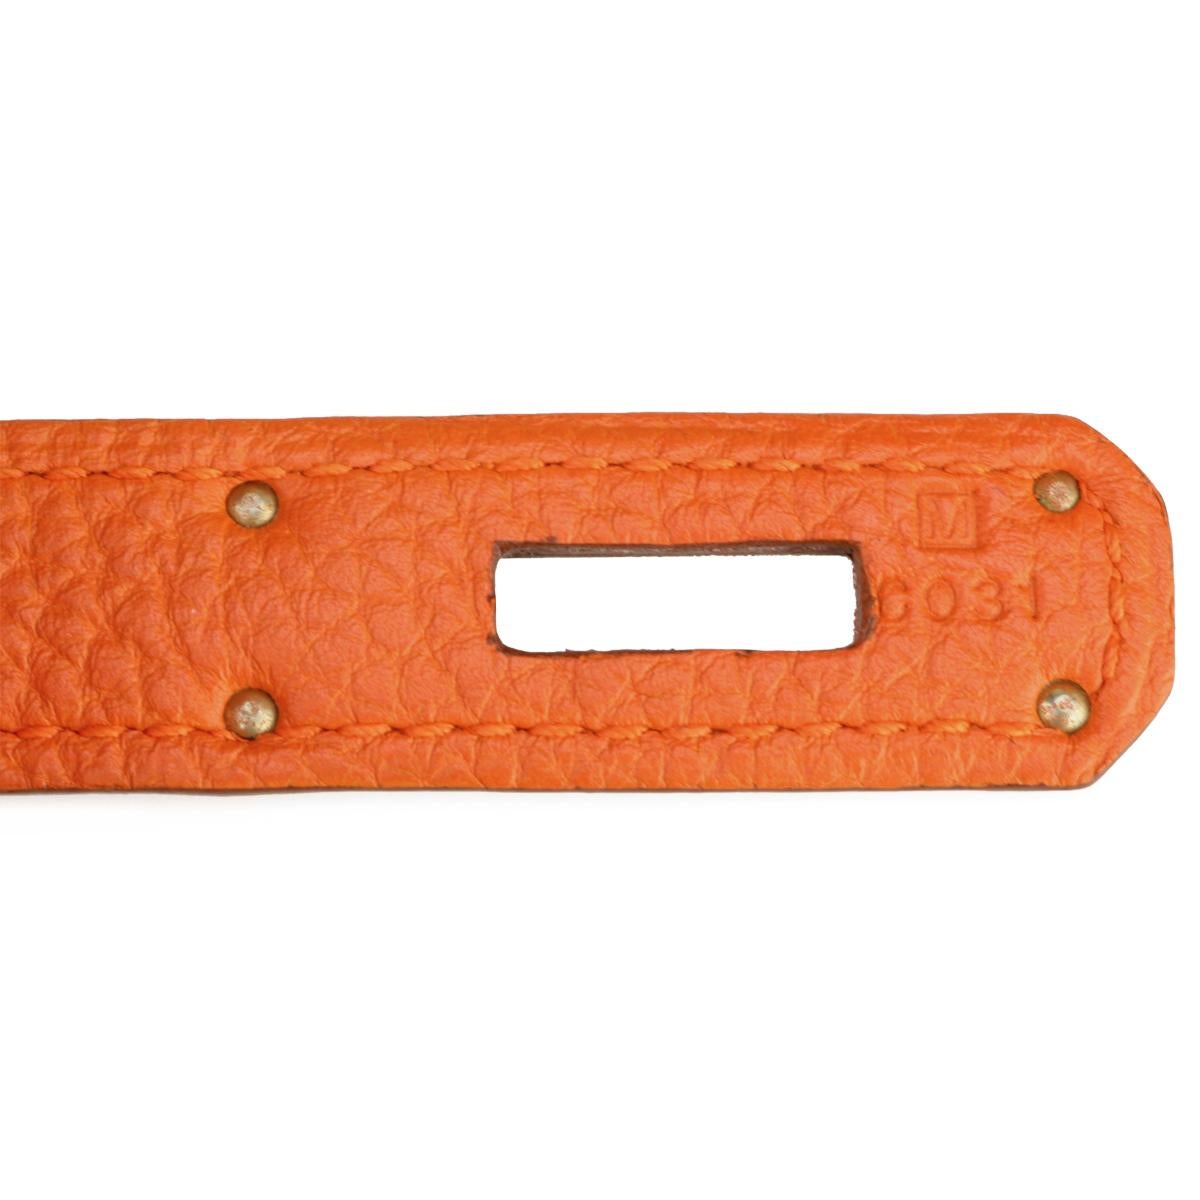 Hermès Birkin Bag 35cm Orange Togo Leather with Palladium Hardware Stamp M 2009 12